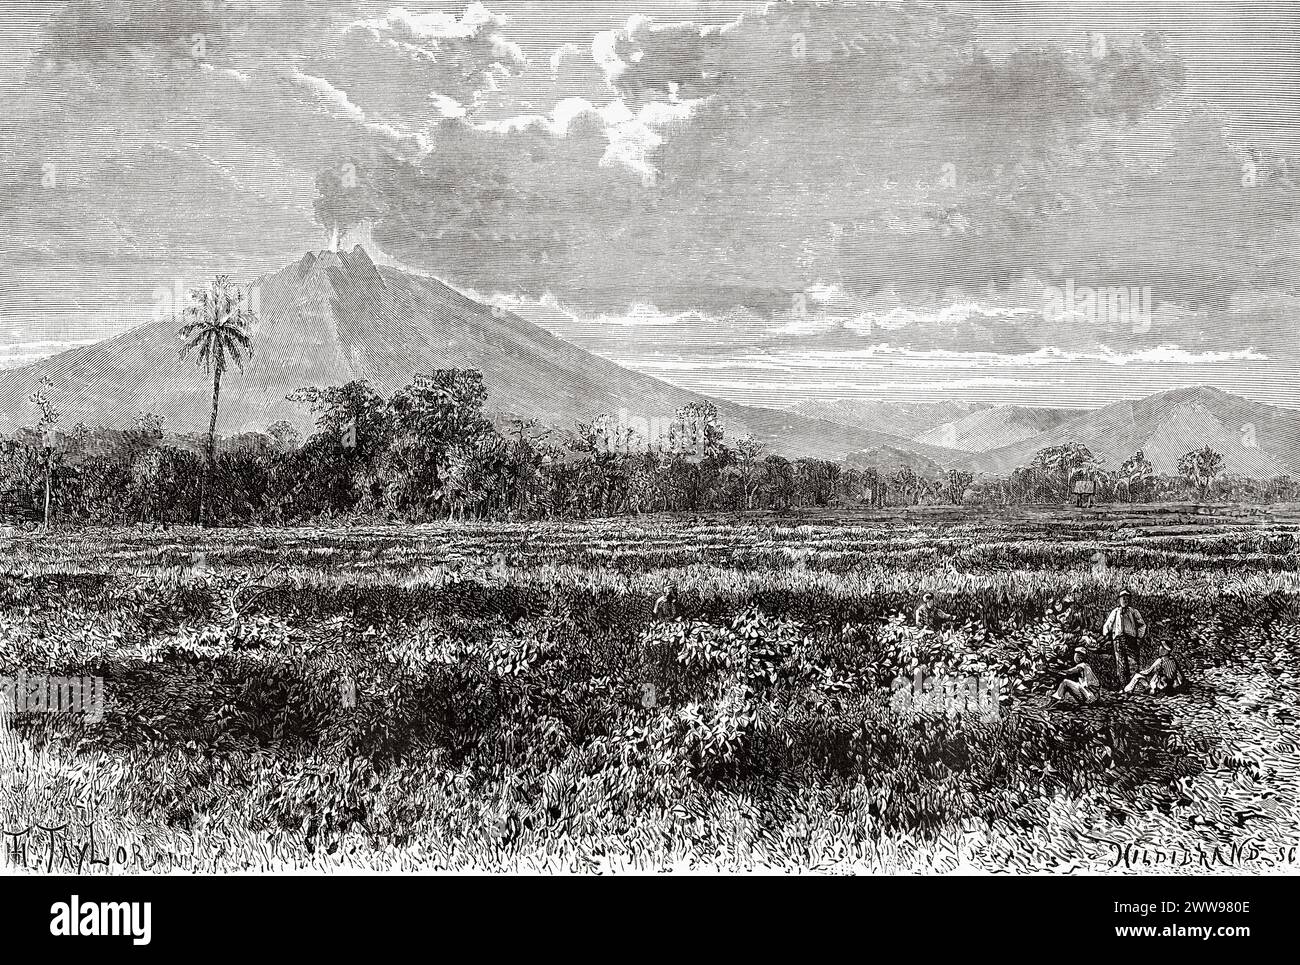 Il Monte Kerinci è uno stratovulcano attivo e la montagna più alta di Sumatra, a 12.484 piedi (3.805 m) sul livello del mare, fornisce Sumatra con la quinta elevazione massima più alta di qualsiasi isola al mondo, l'isola di Sumatra. Indonesia. Disegno di Taylor. Attraverso l'isola di Sumatra 1877 di Daniel David Veth (1850 - 1885) le Tour du Monde 1880 Foto Stock